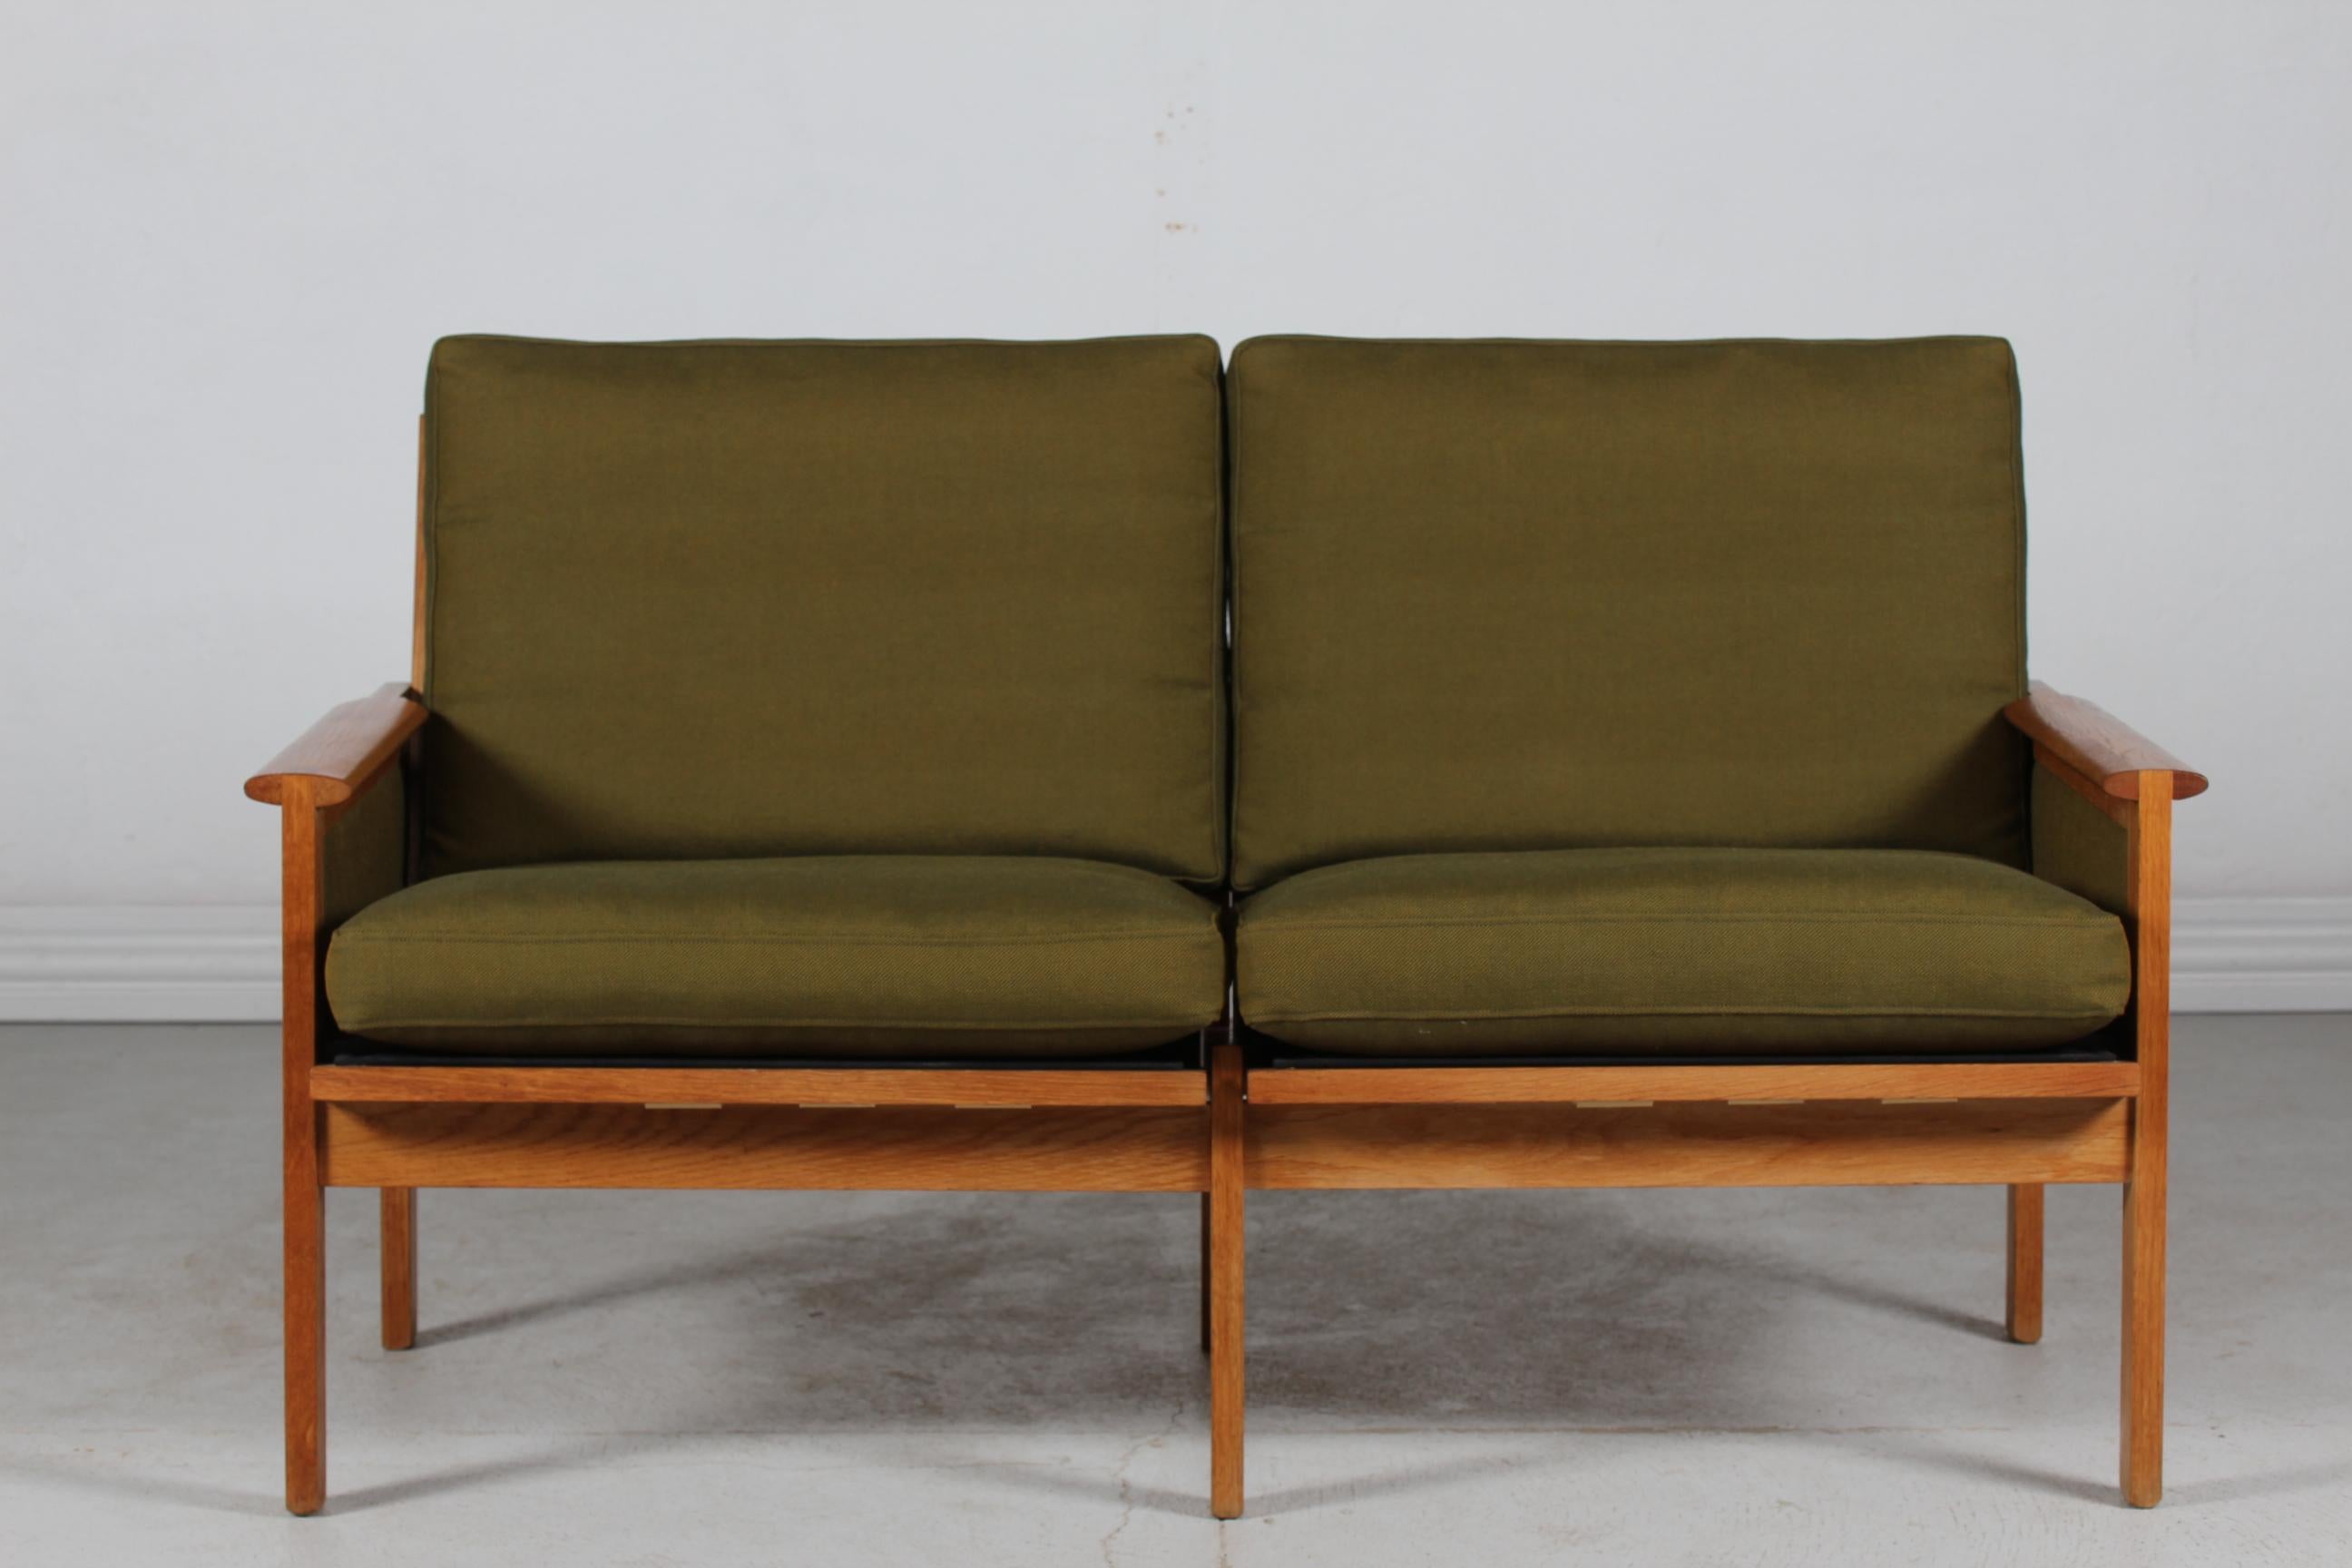 Dänisches Vintage-Zweisitzer-Sofa Capella, entworfen von dem dänischen Möbeldesigner Kristian Illum Wikkelsø (1919-1999), hergestellt von Niels Eilersen, Dänemark.
Das Sofa ist aus massiver Eiche gefertigt und mit dem originalen grünen Stoff